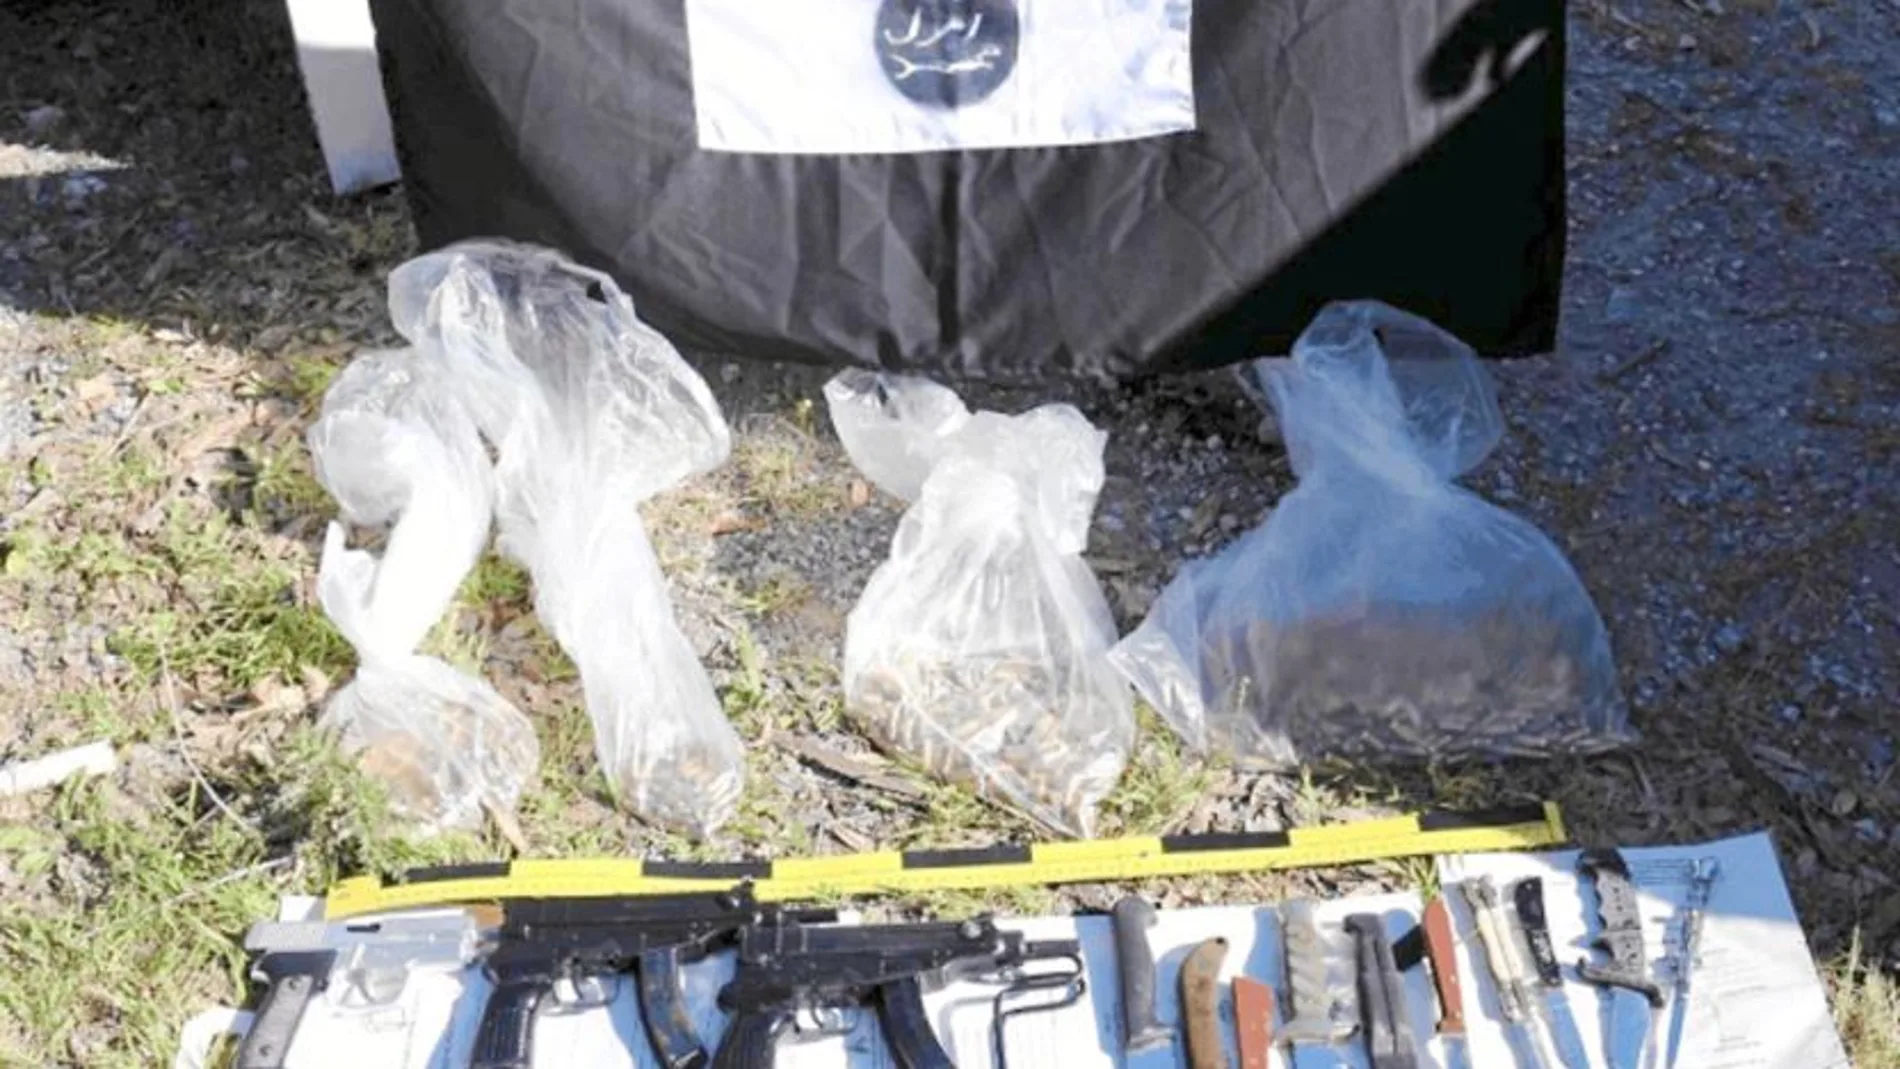 Las ametralladoras, pistolas, munición, símbolo del Daesh y cuchillos del zulo encontrado en Ceuta